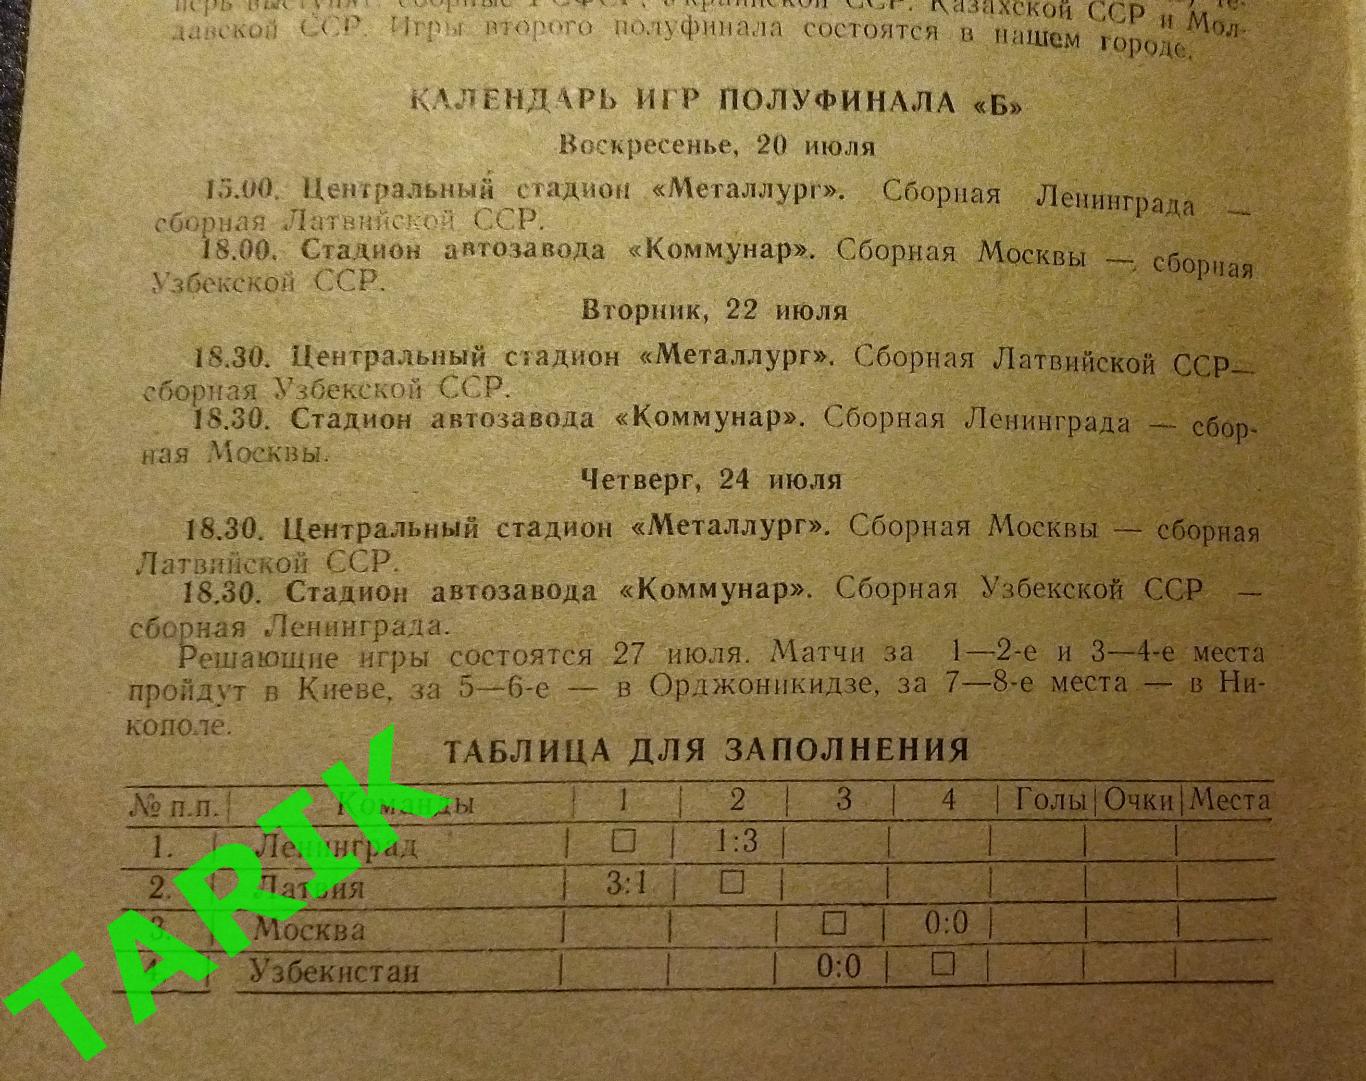 9 летняя спартакиада народов СССР Запорожье 1986 2